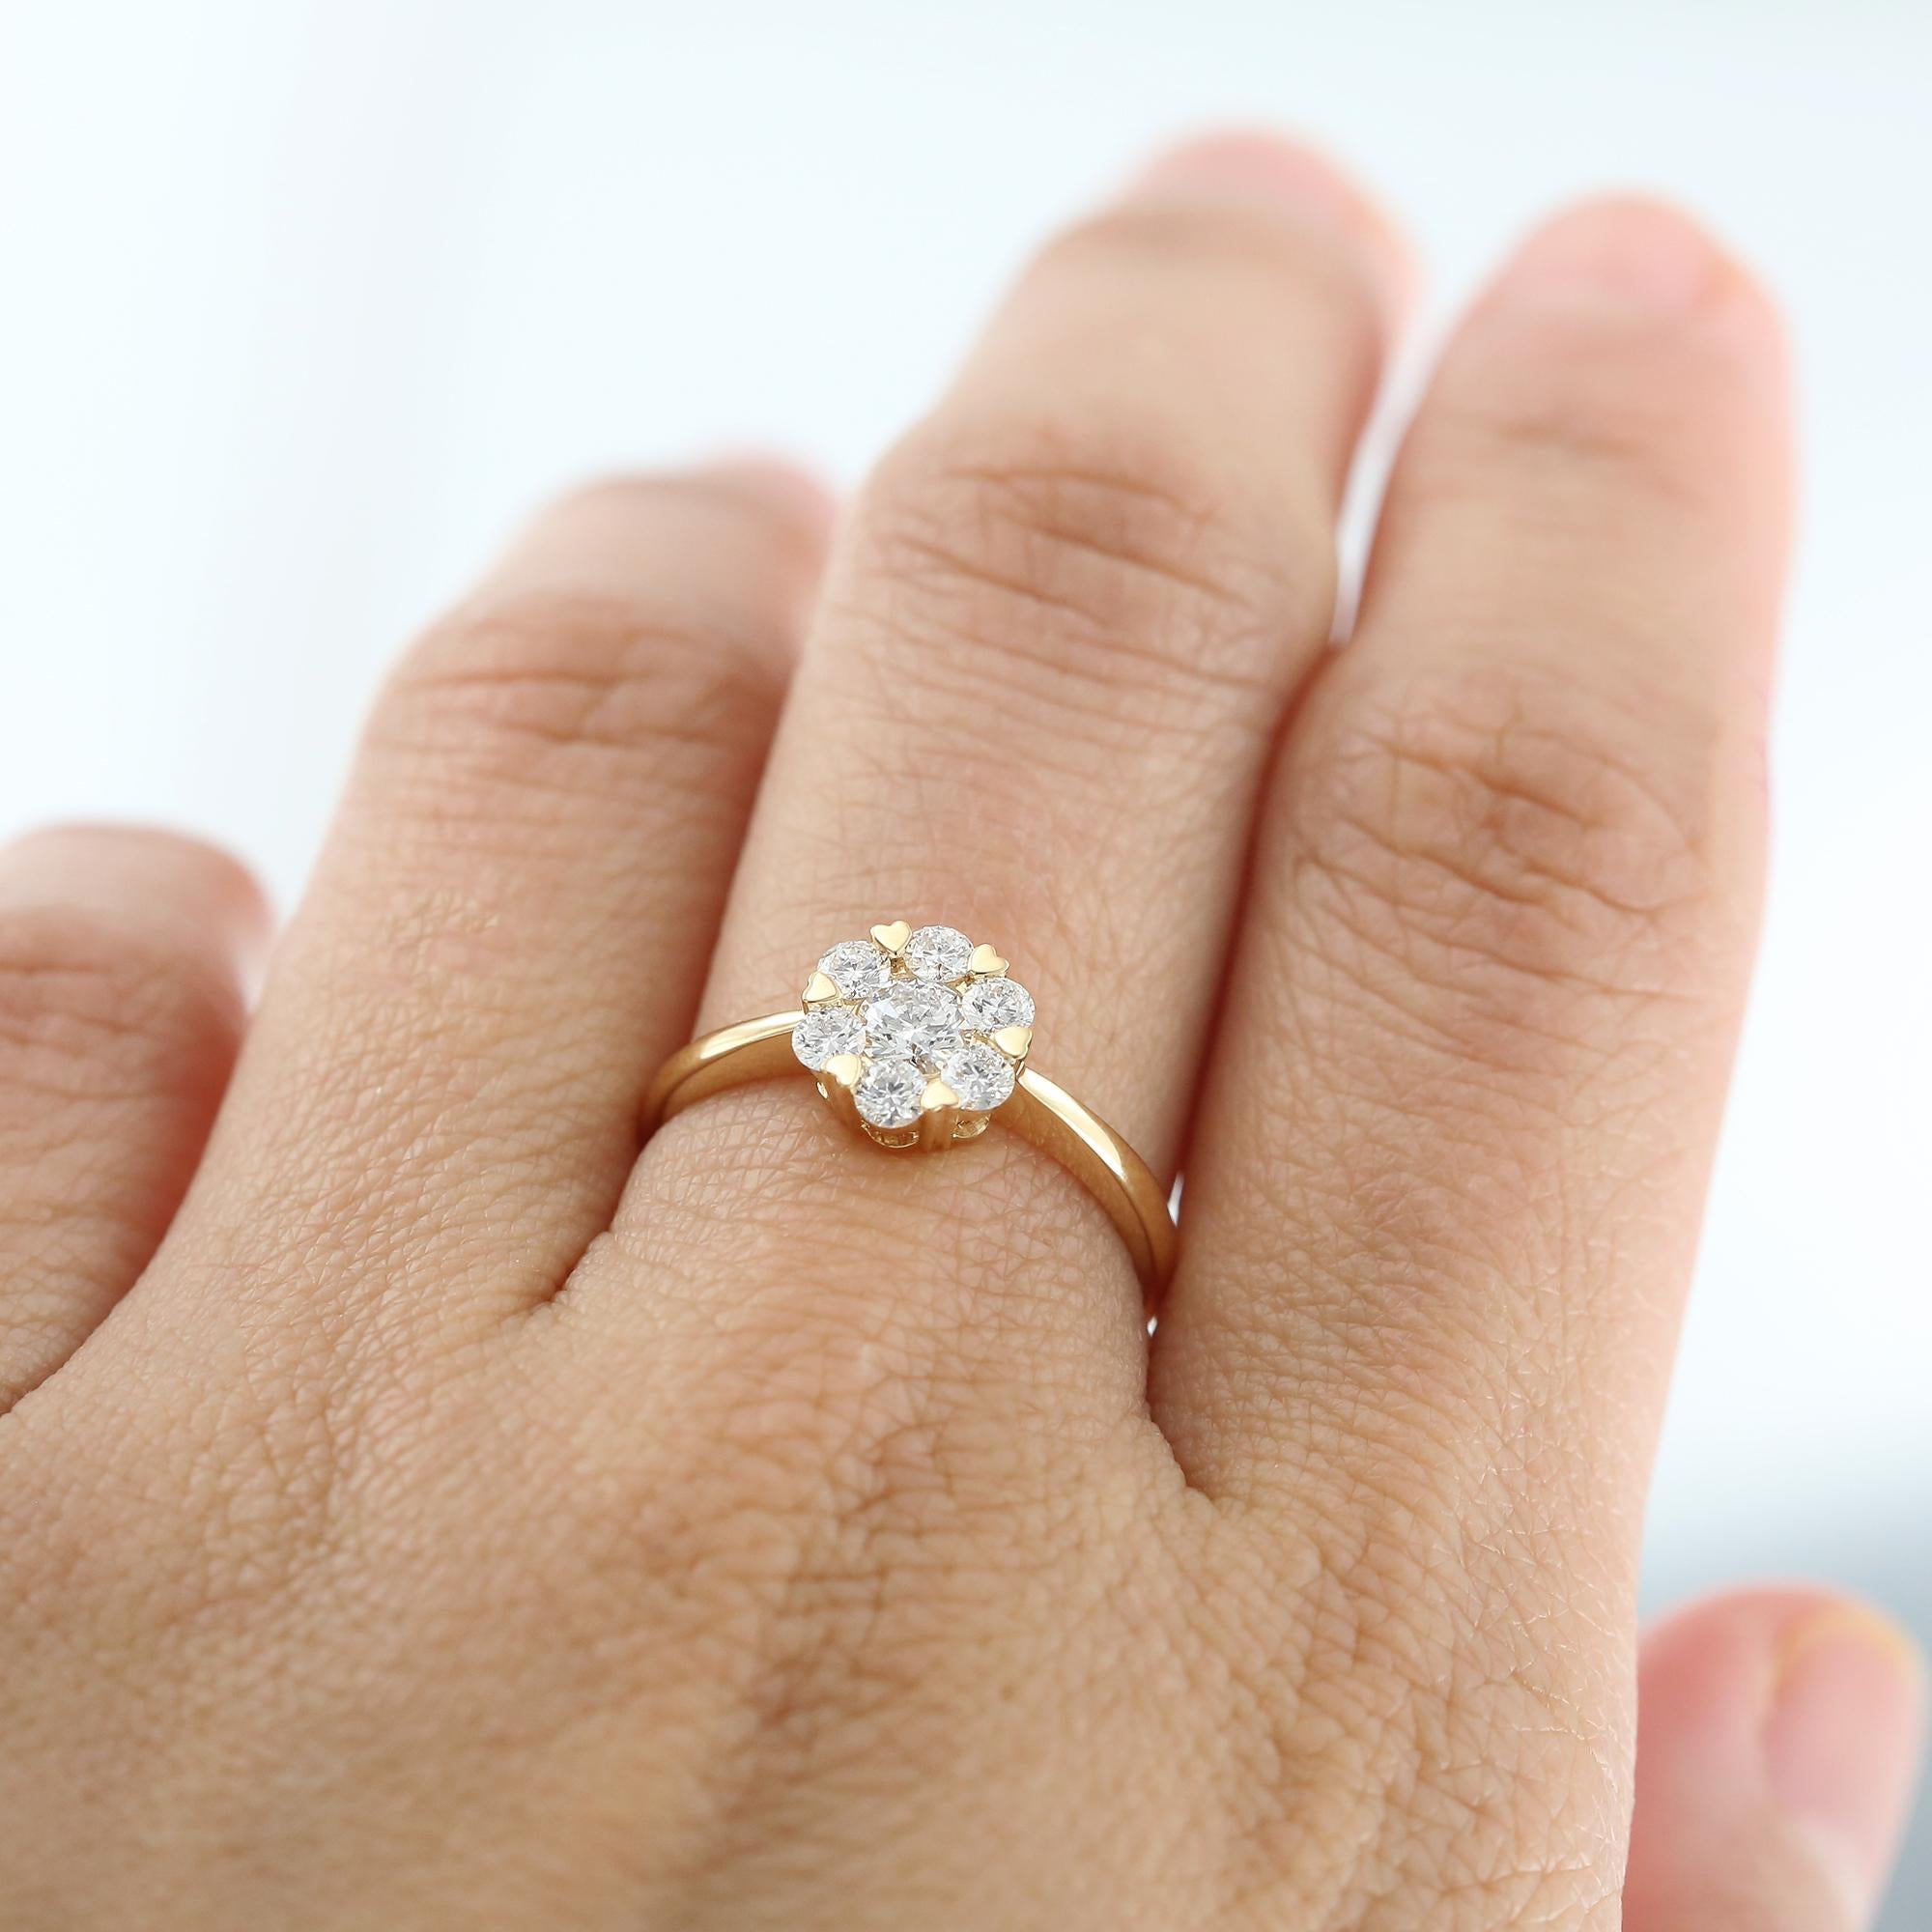 Der Diamantschmuck Bloom mit seinen zarten herzförmigen Akzenten ist ein schönes Symbol für Liebe und Freundschaft.

Bloom-Schmuckstücke sind so konzipiert, dass die Diamanten im Brillantschliff in jedem Stück ein maximales Funkeln entfalten. Das